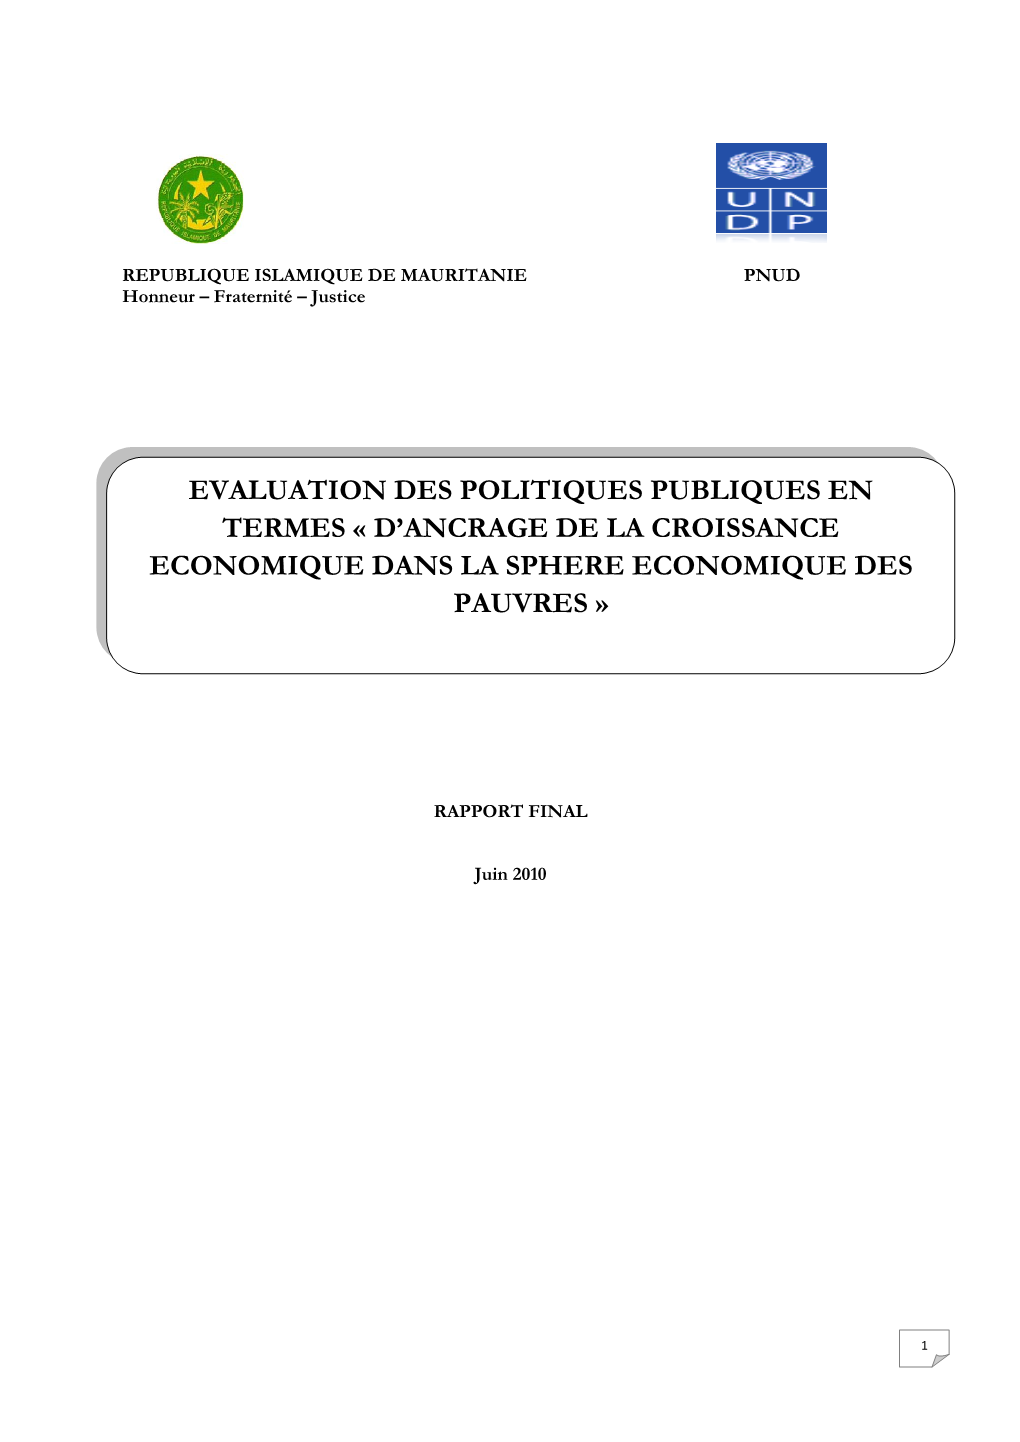 Evaluation Des Politiques Publiques En Termes « D’Ancrage De La Croissance Economique Dans La Sphere Economique Des Pauvres »